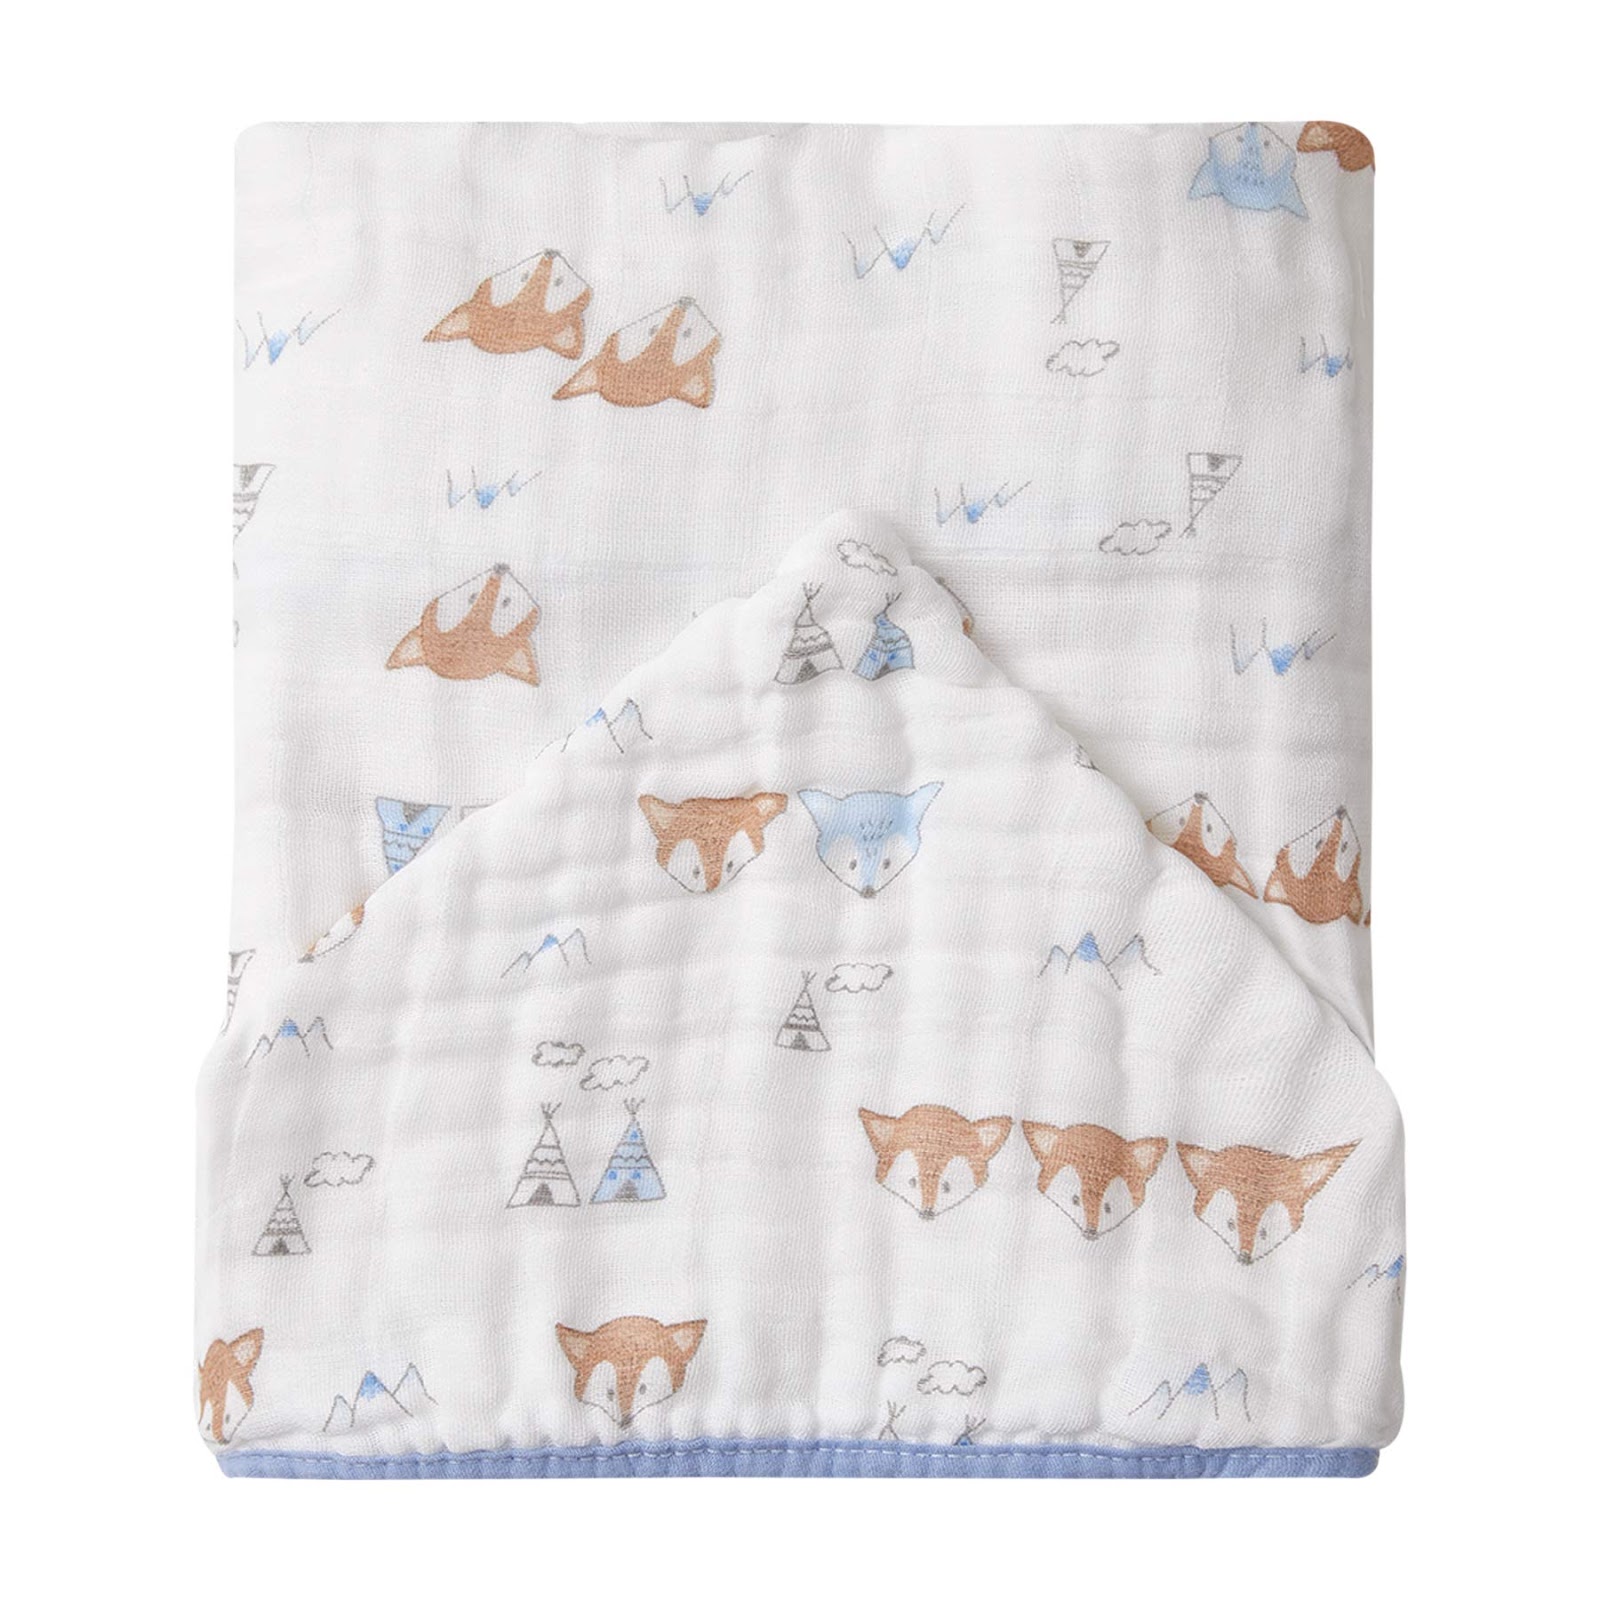 Toalhão de Banho Soft Premium Papi Baby C/ Capuz Estampado para Bebê 1,05M X 85cm Contém 01 Un 105 x 85 cm Azul (Raposa)